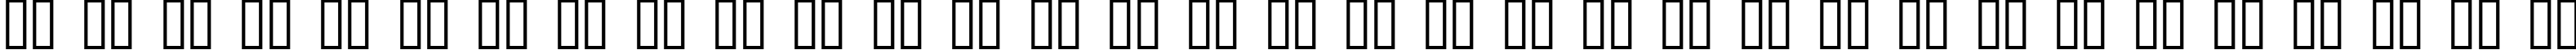 Пример написания русского алфавита шрифтом Duo Dunkel